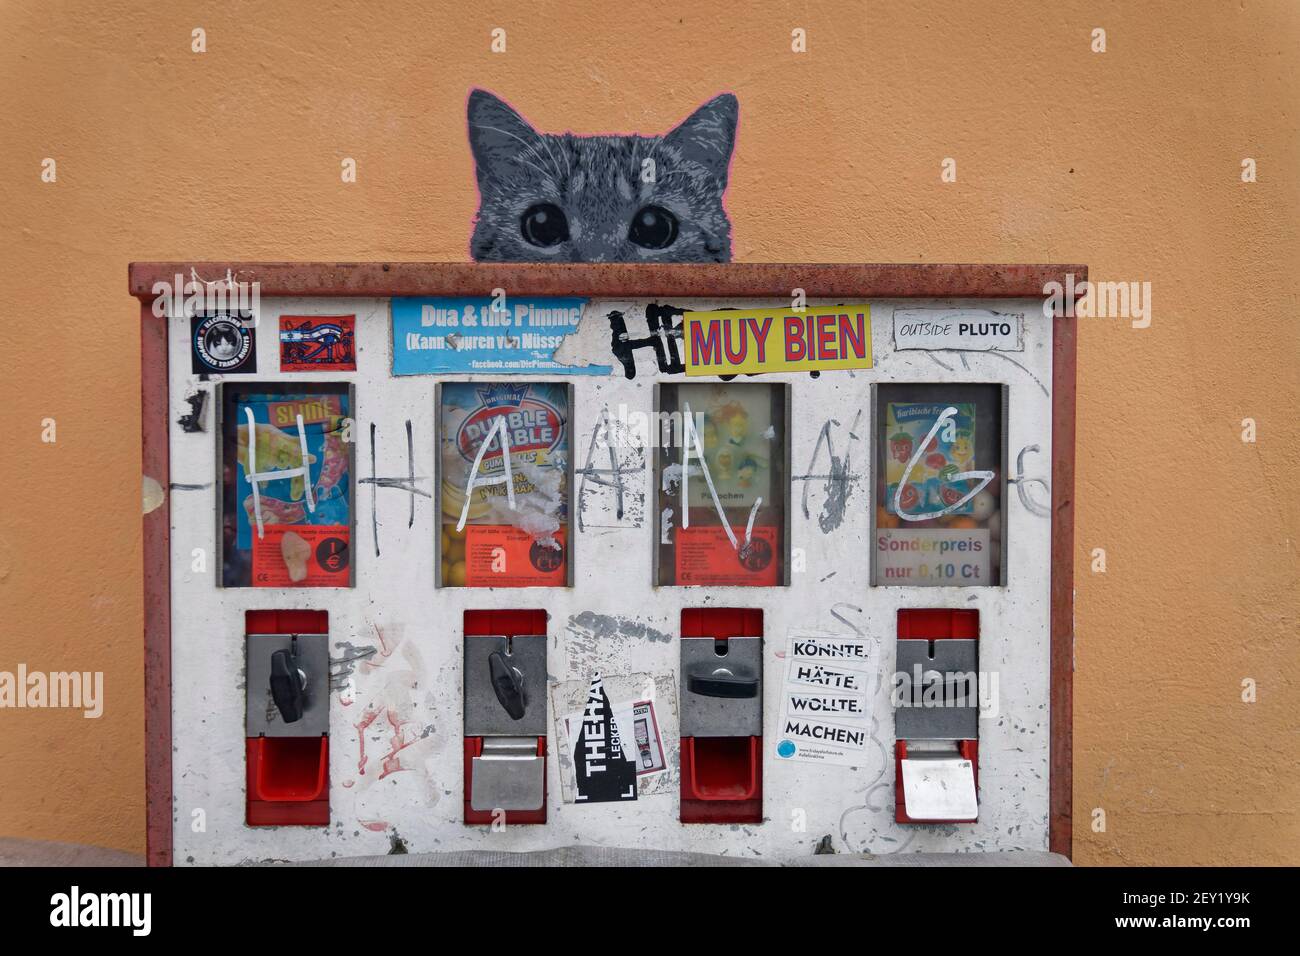 Kaugummiautomat, Katze, Graffiti, Wandmalerei, Humor, Berlin-Kreuzberg, Deutschland, Stockfoto